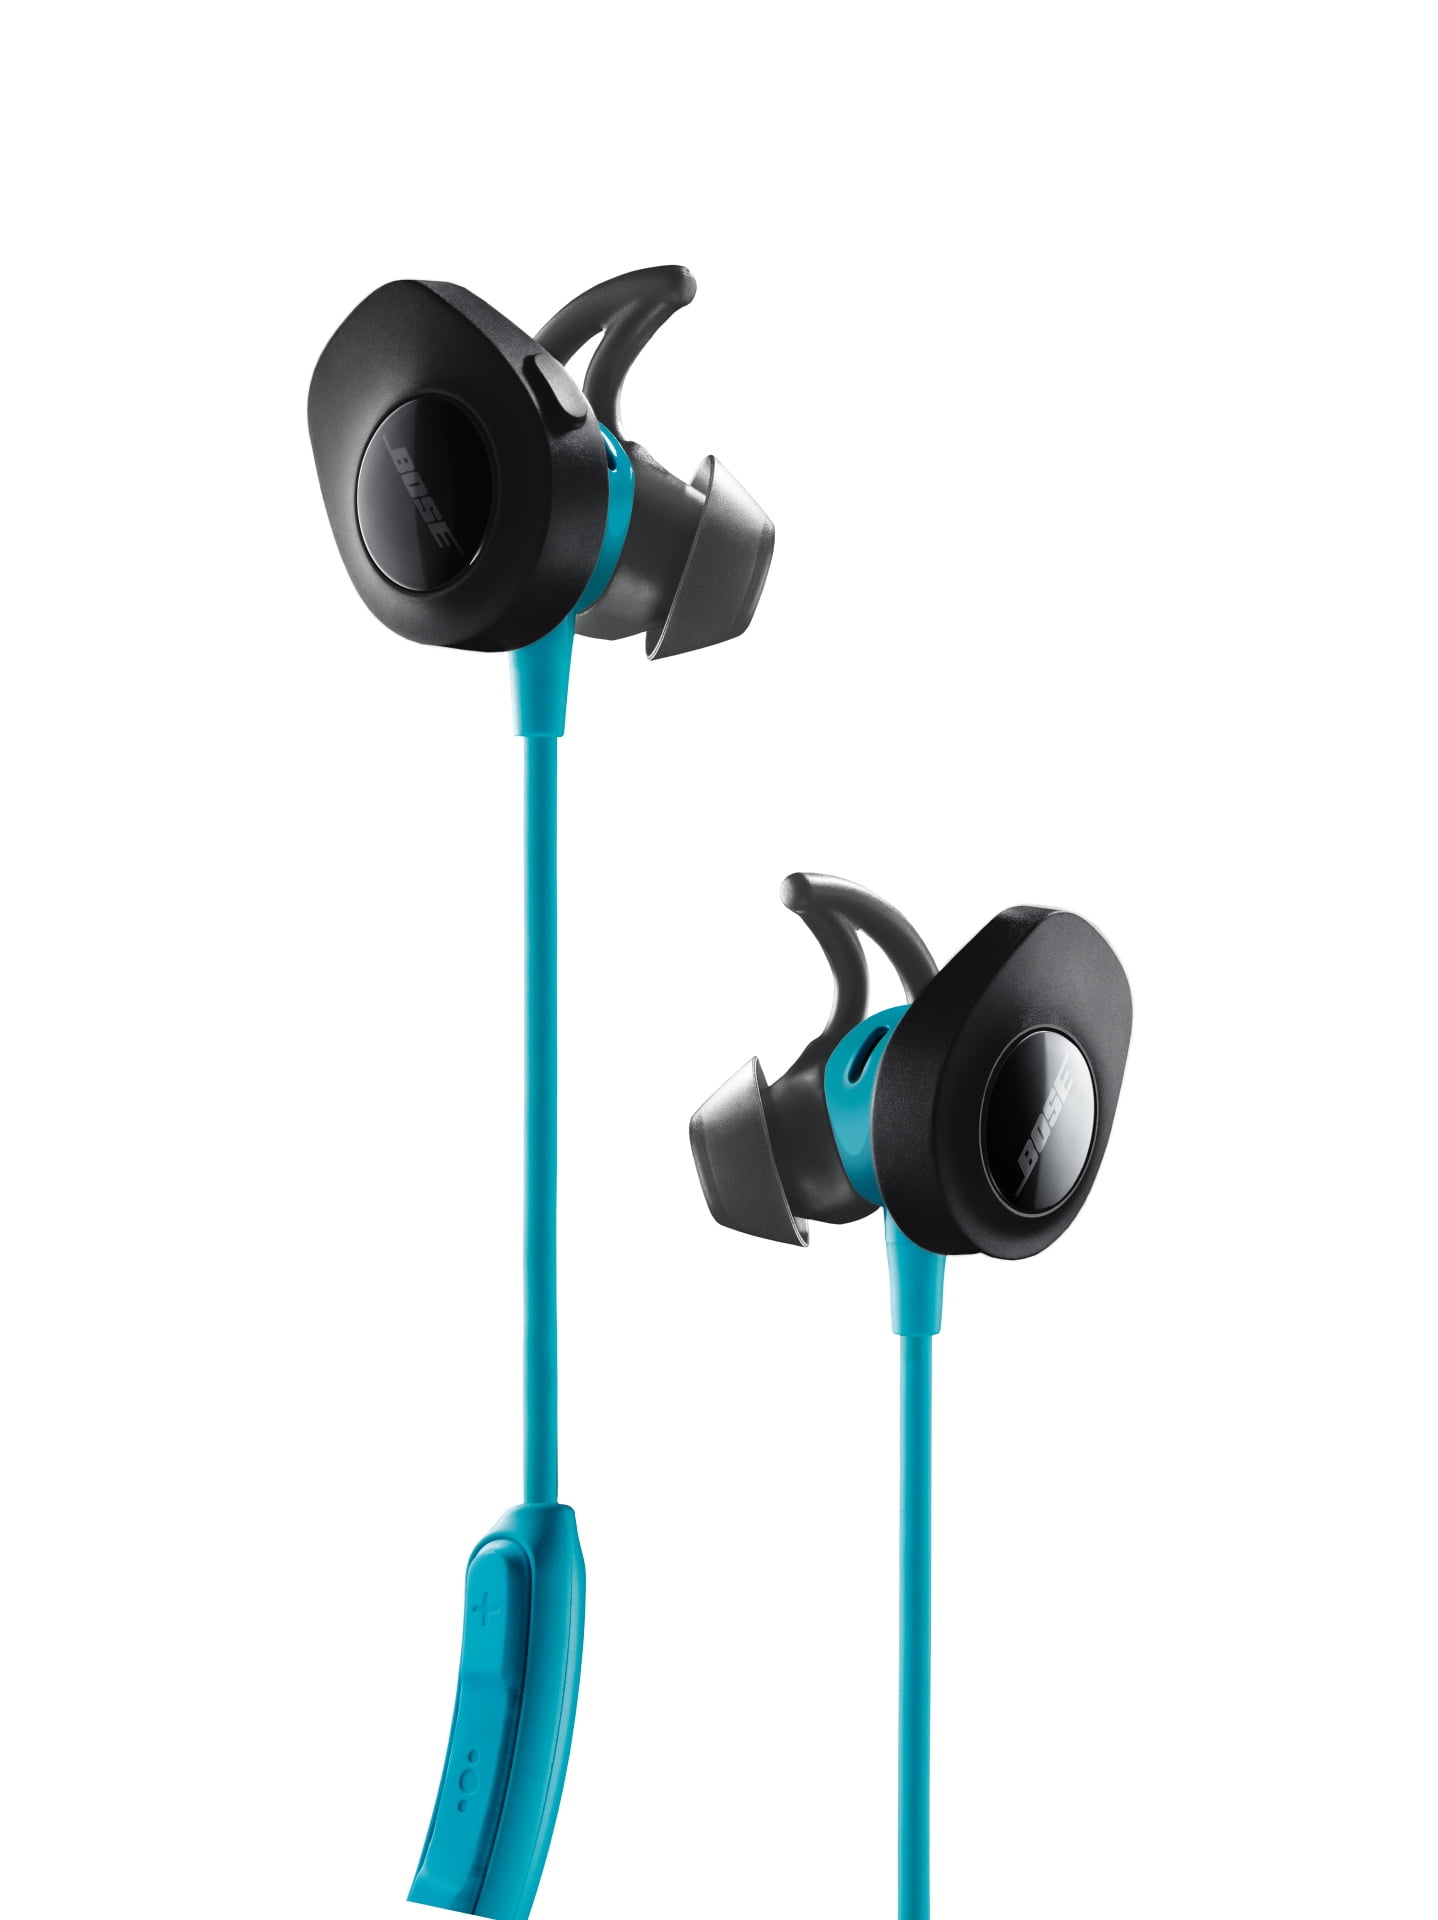 højde Selskab gøre det muligt for Bose SoundSport Wireless Bluetooth Earbuds, Aqua - Walmart.com